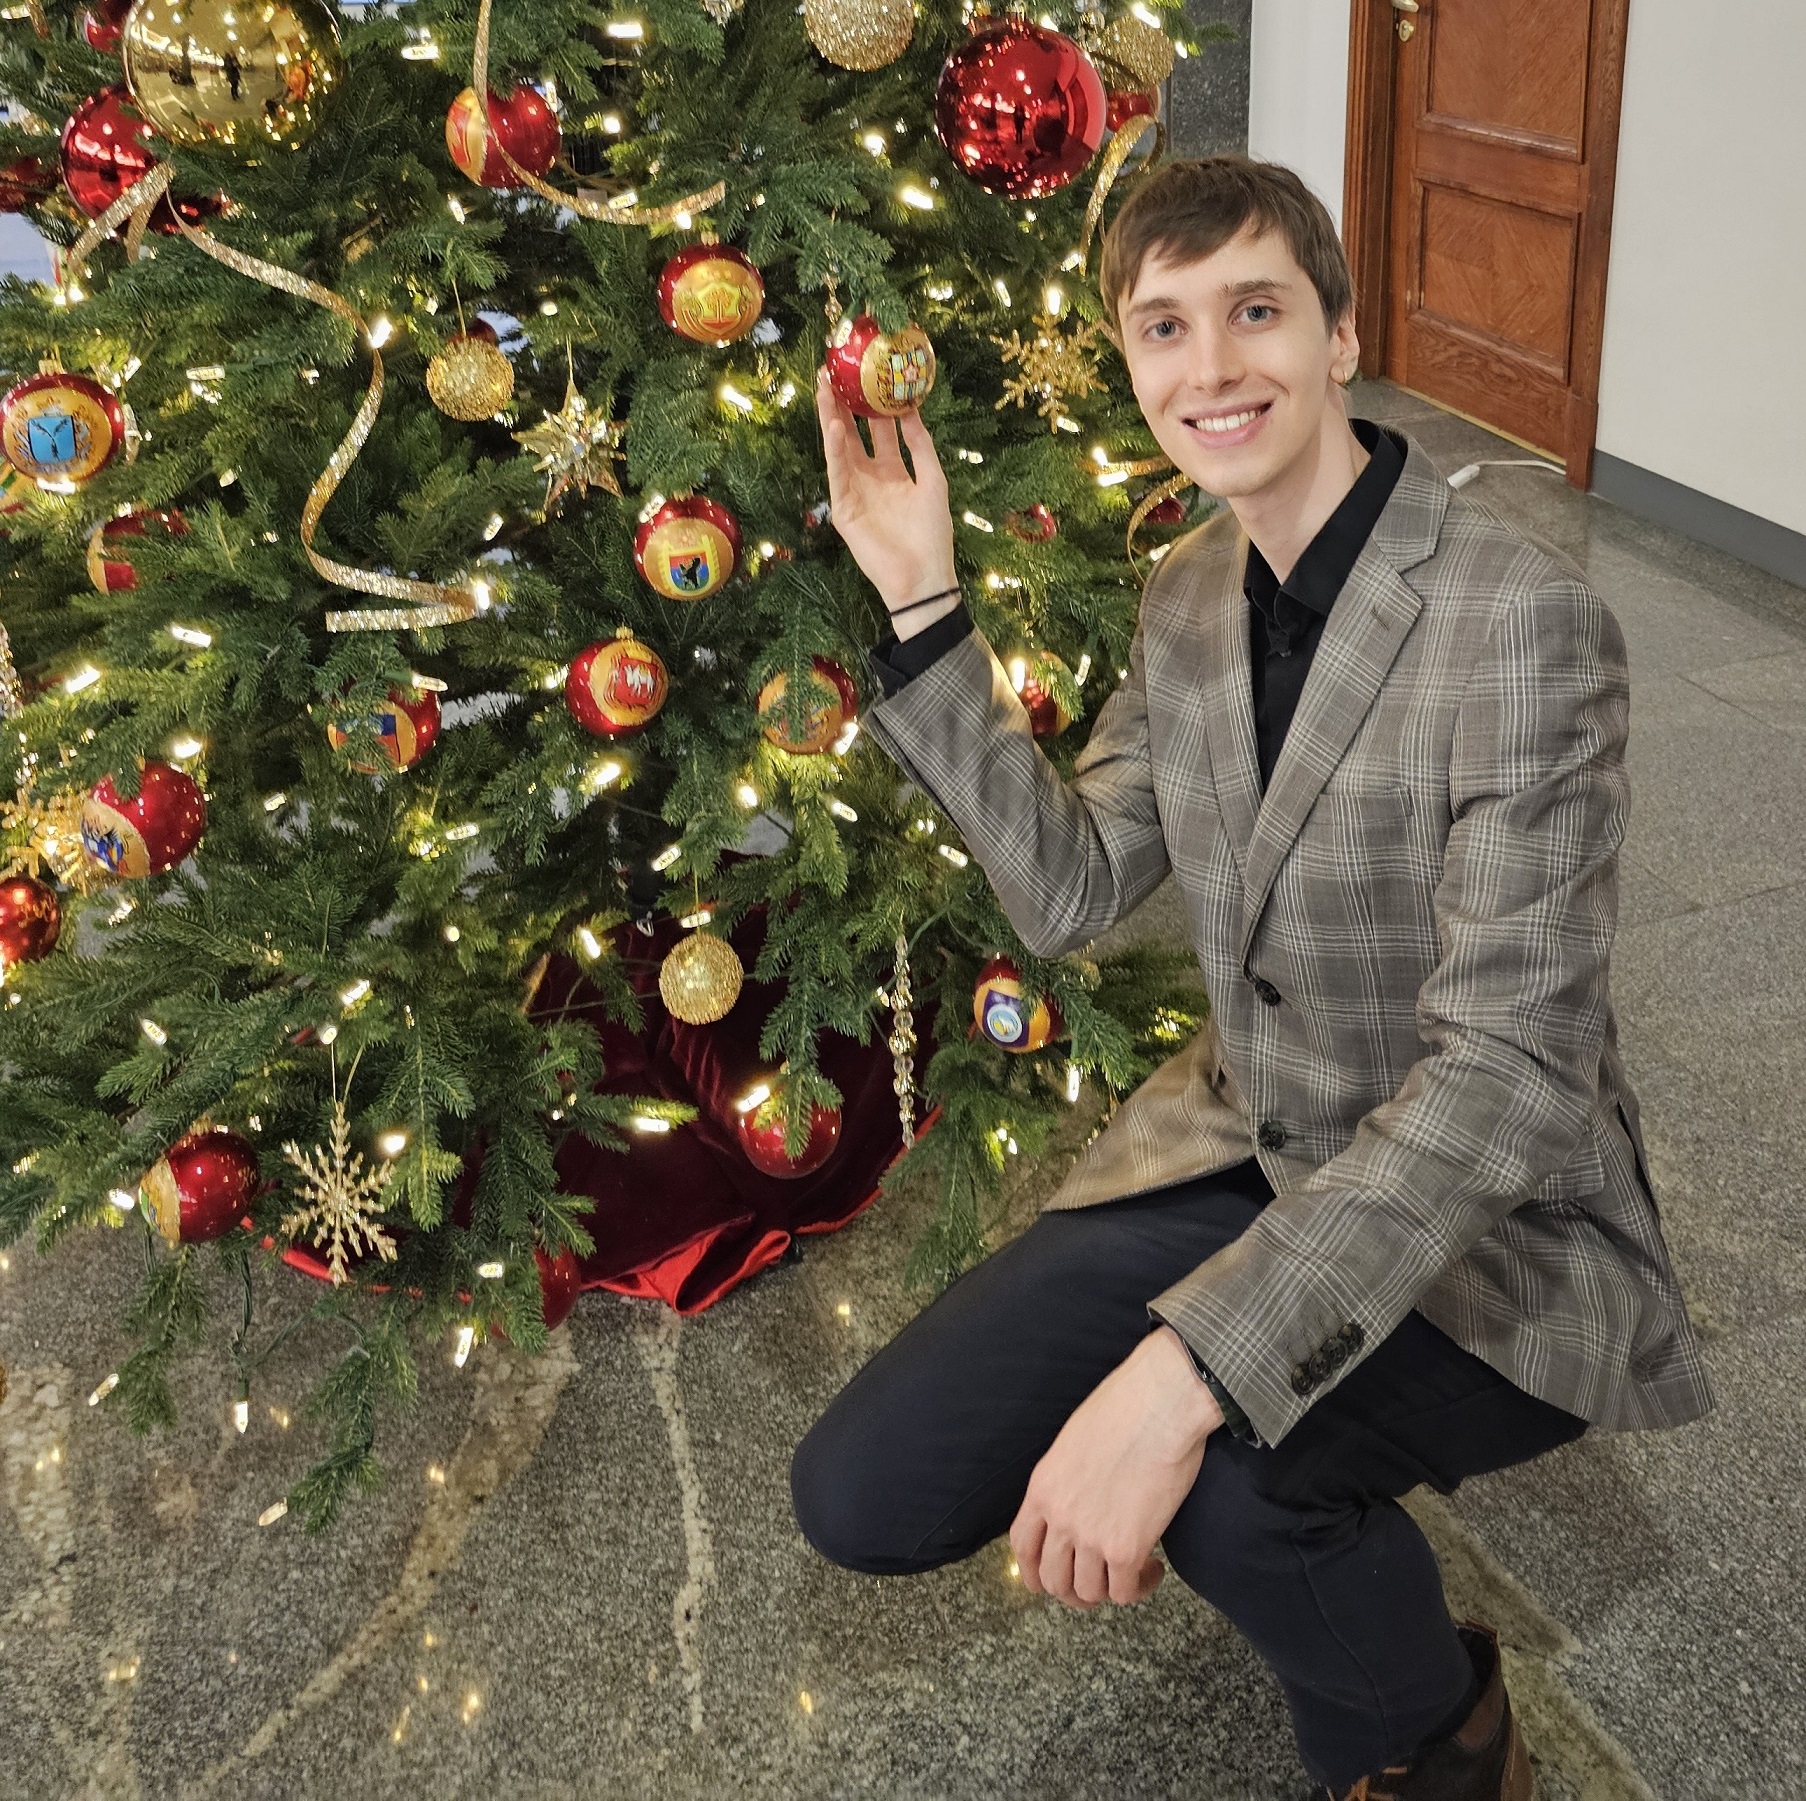 Streamer Xop0 posing next to Christmas tree